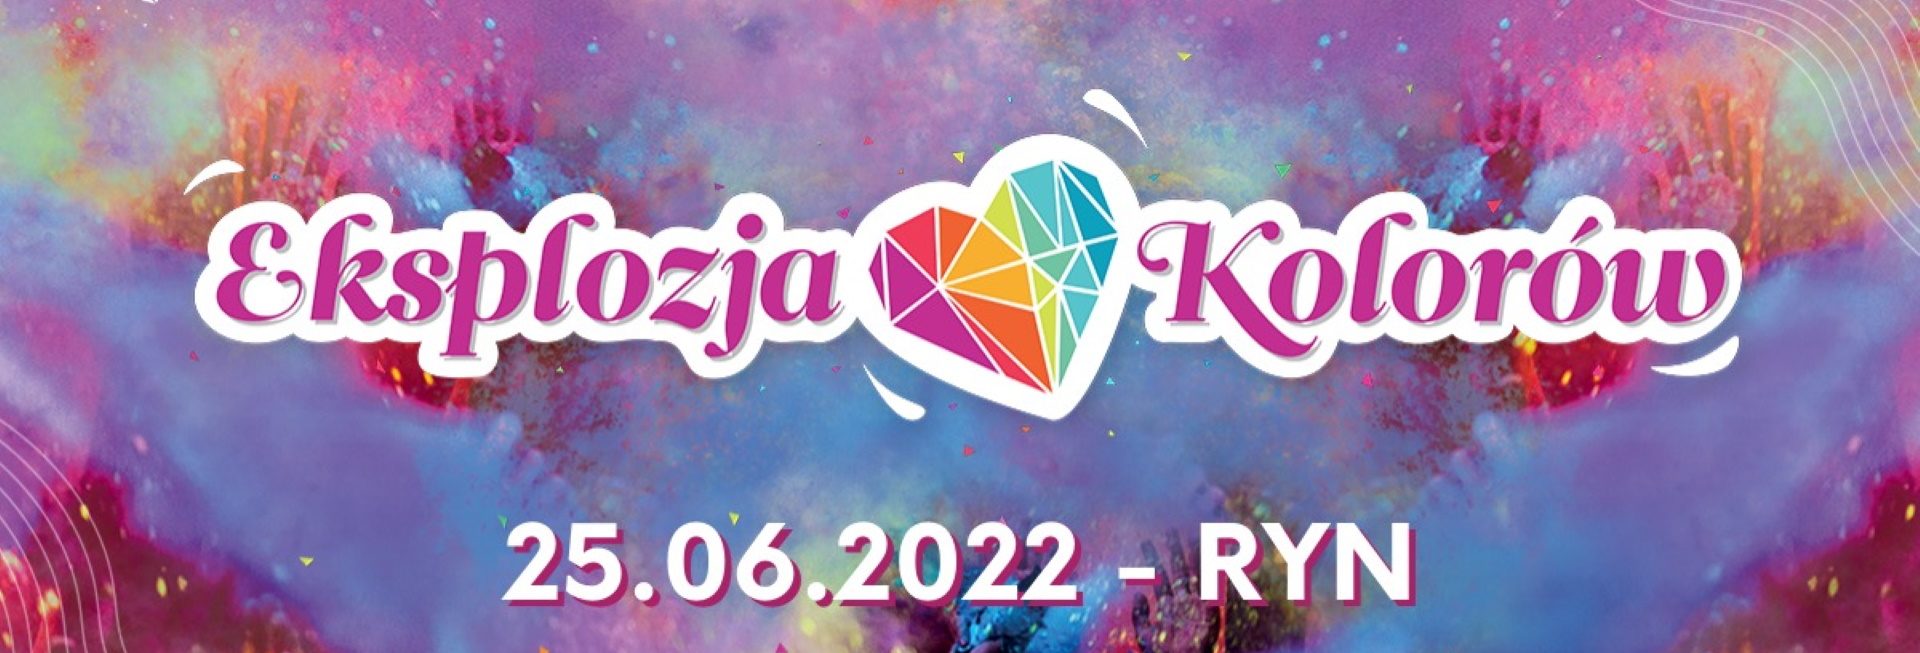 Plakat graficzny zapraszający do Rynu na Festiwal Ekspozycja Kolorów Ryn 2022.